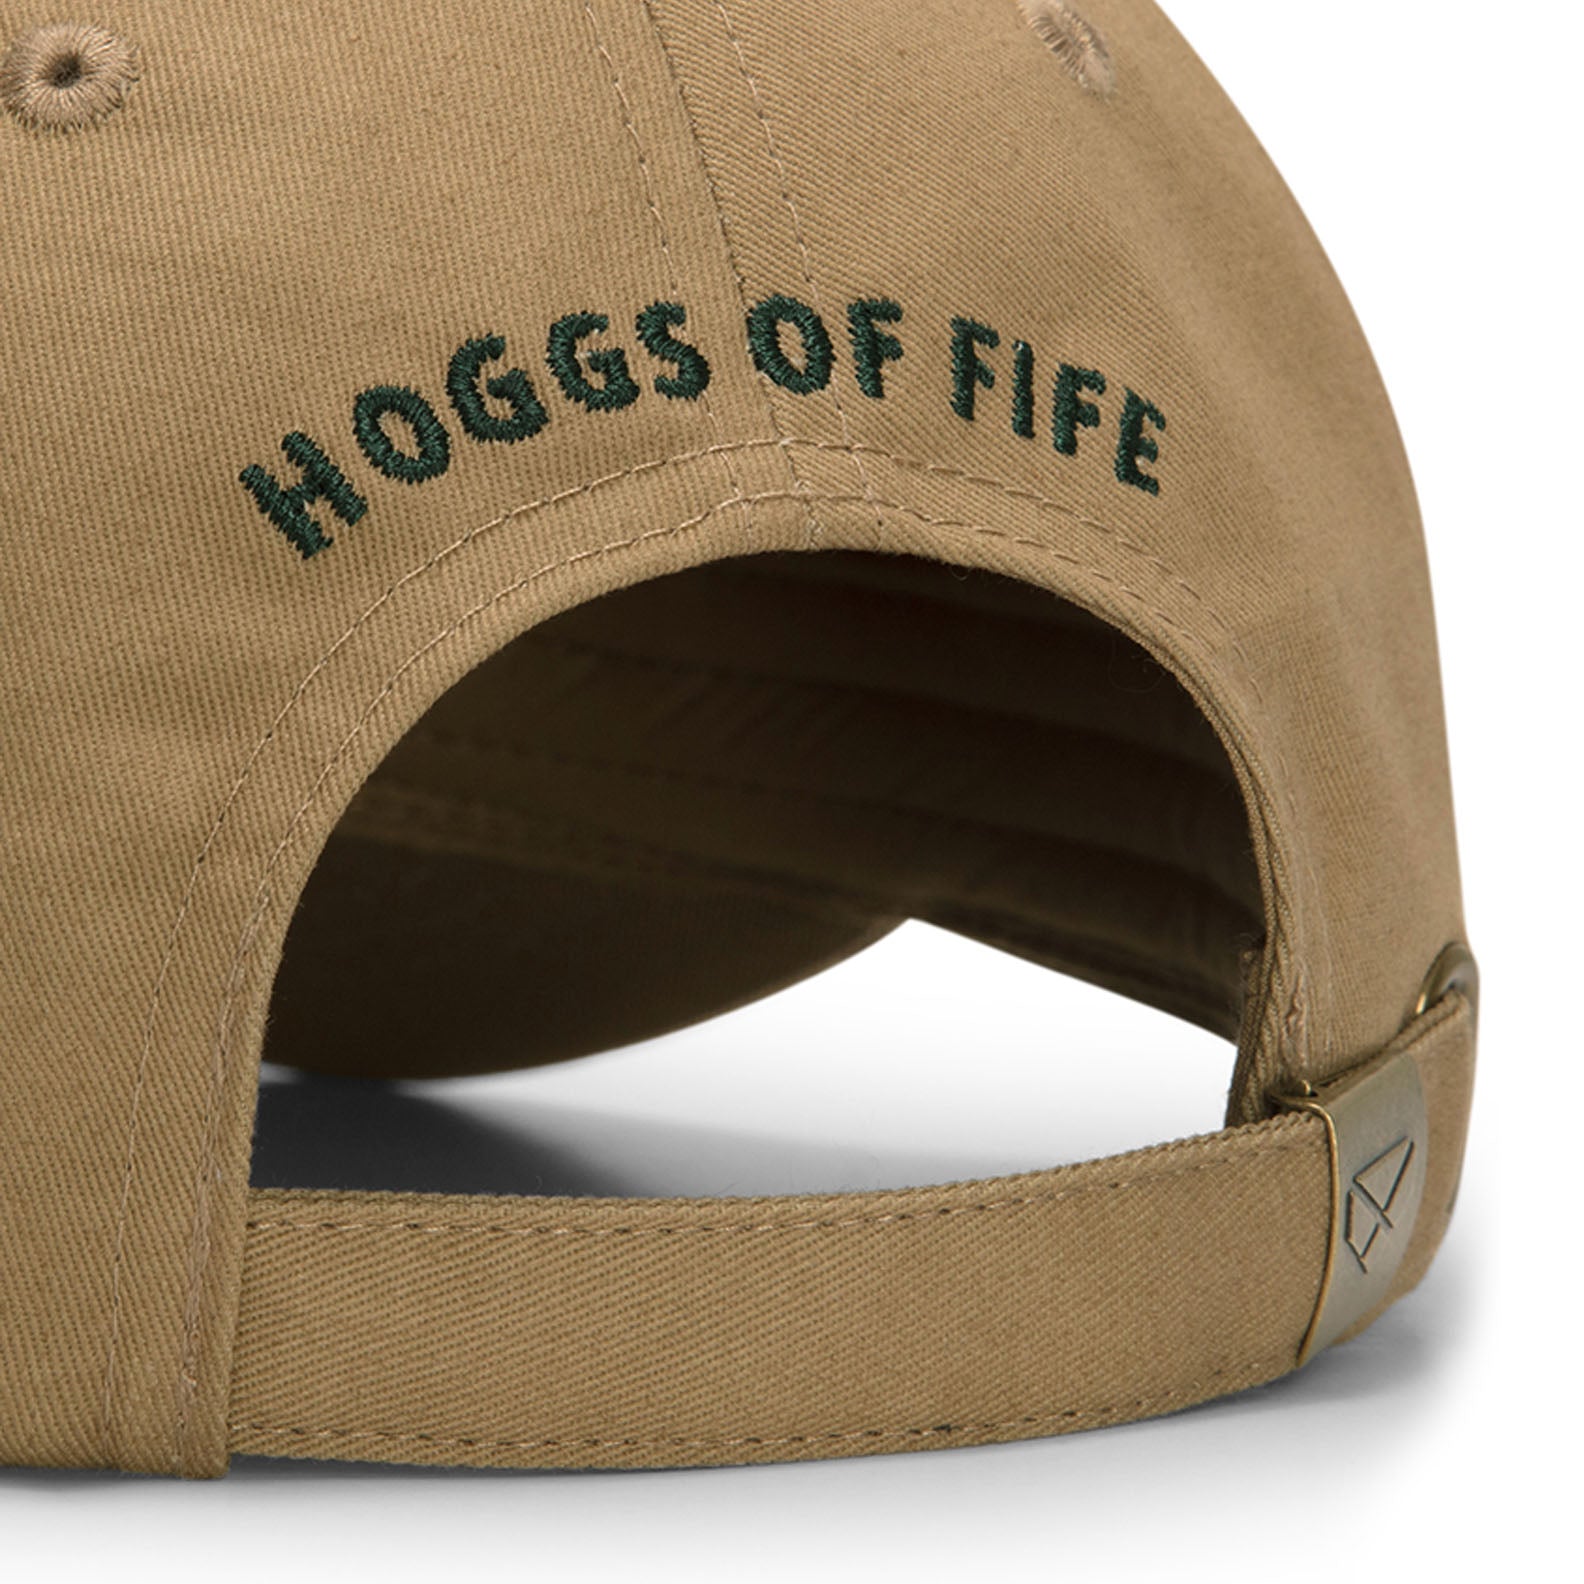 Hoggs Of Fife 1888 Baseball Cap